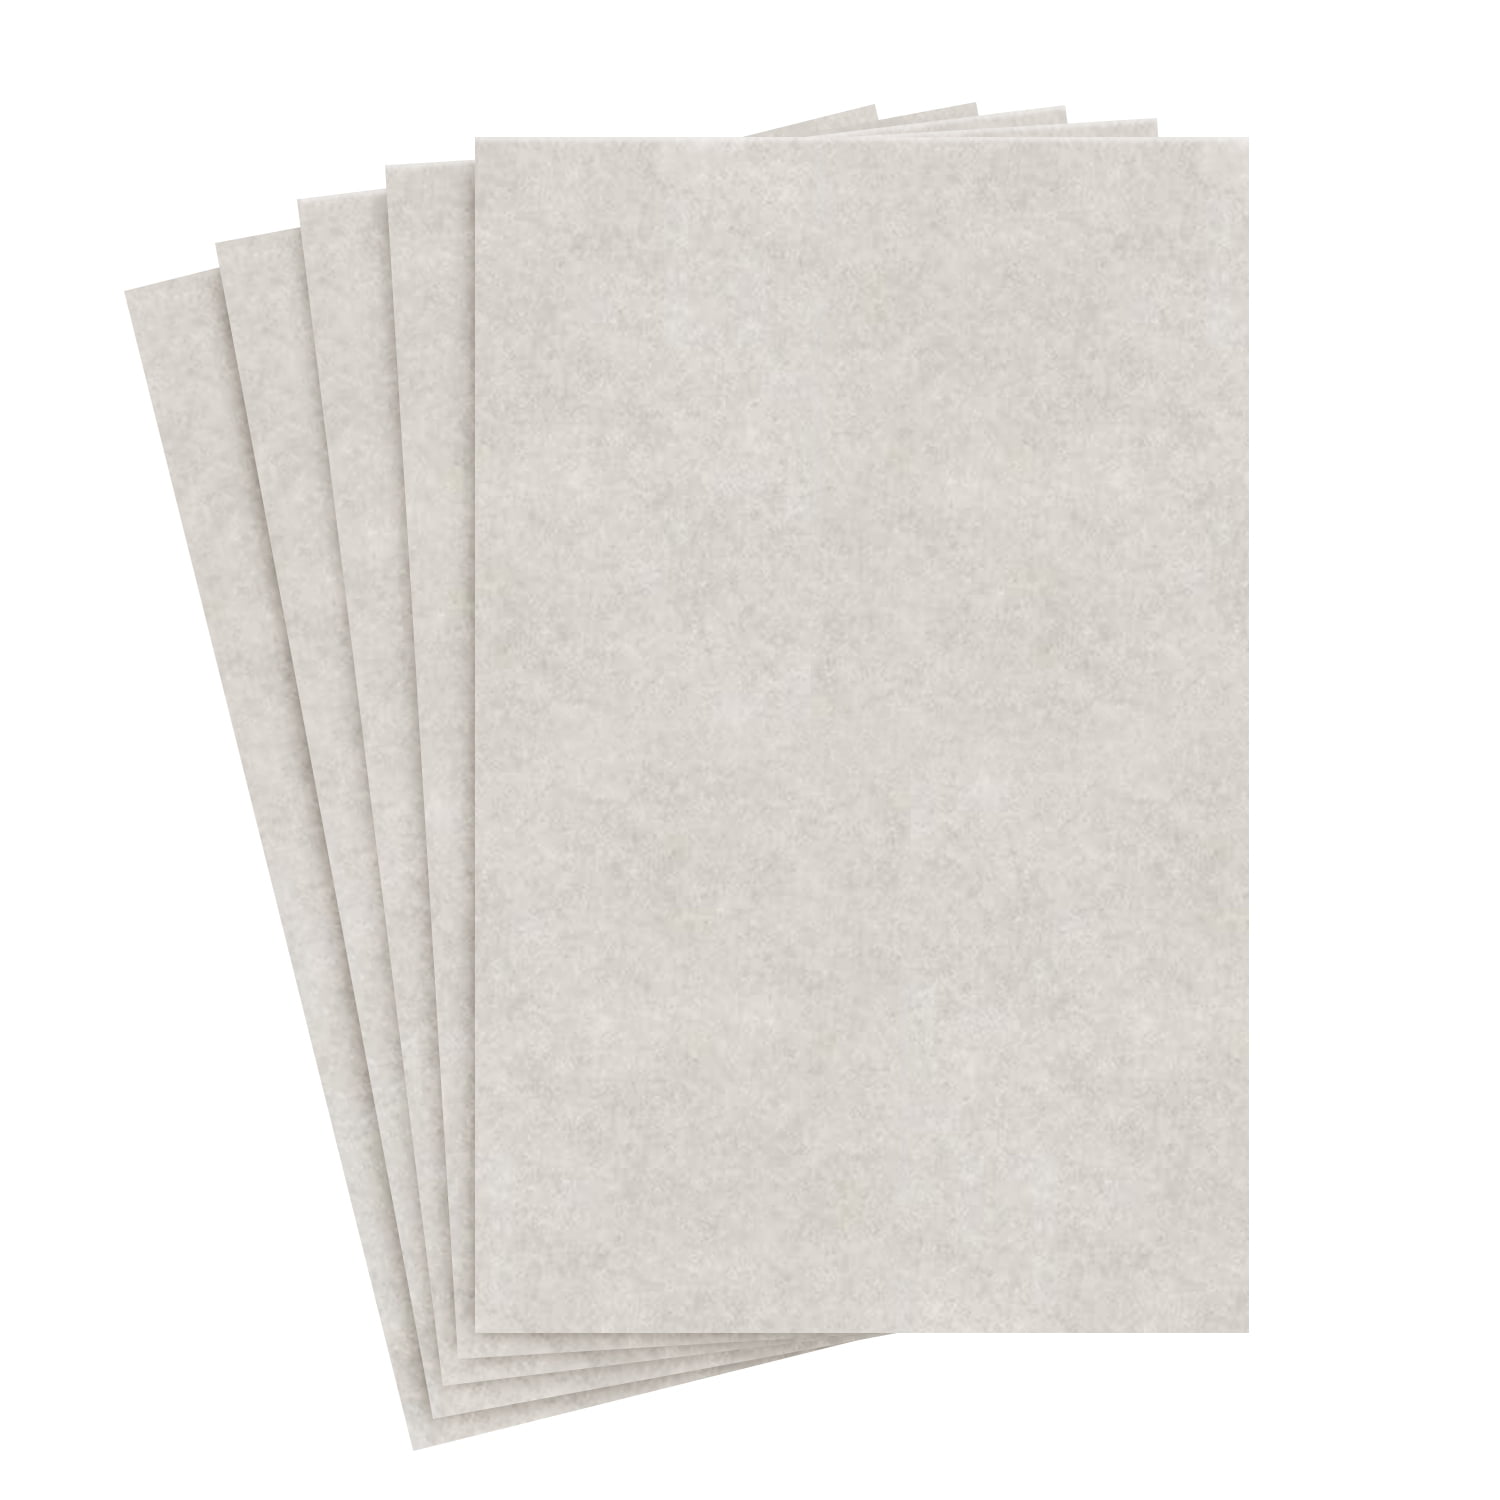 8.5 x 11 Natural Stationery Parchment Paper - 24lb Bond/60lb Text